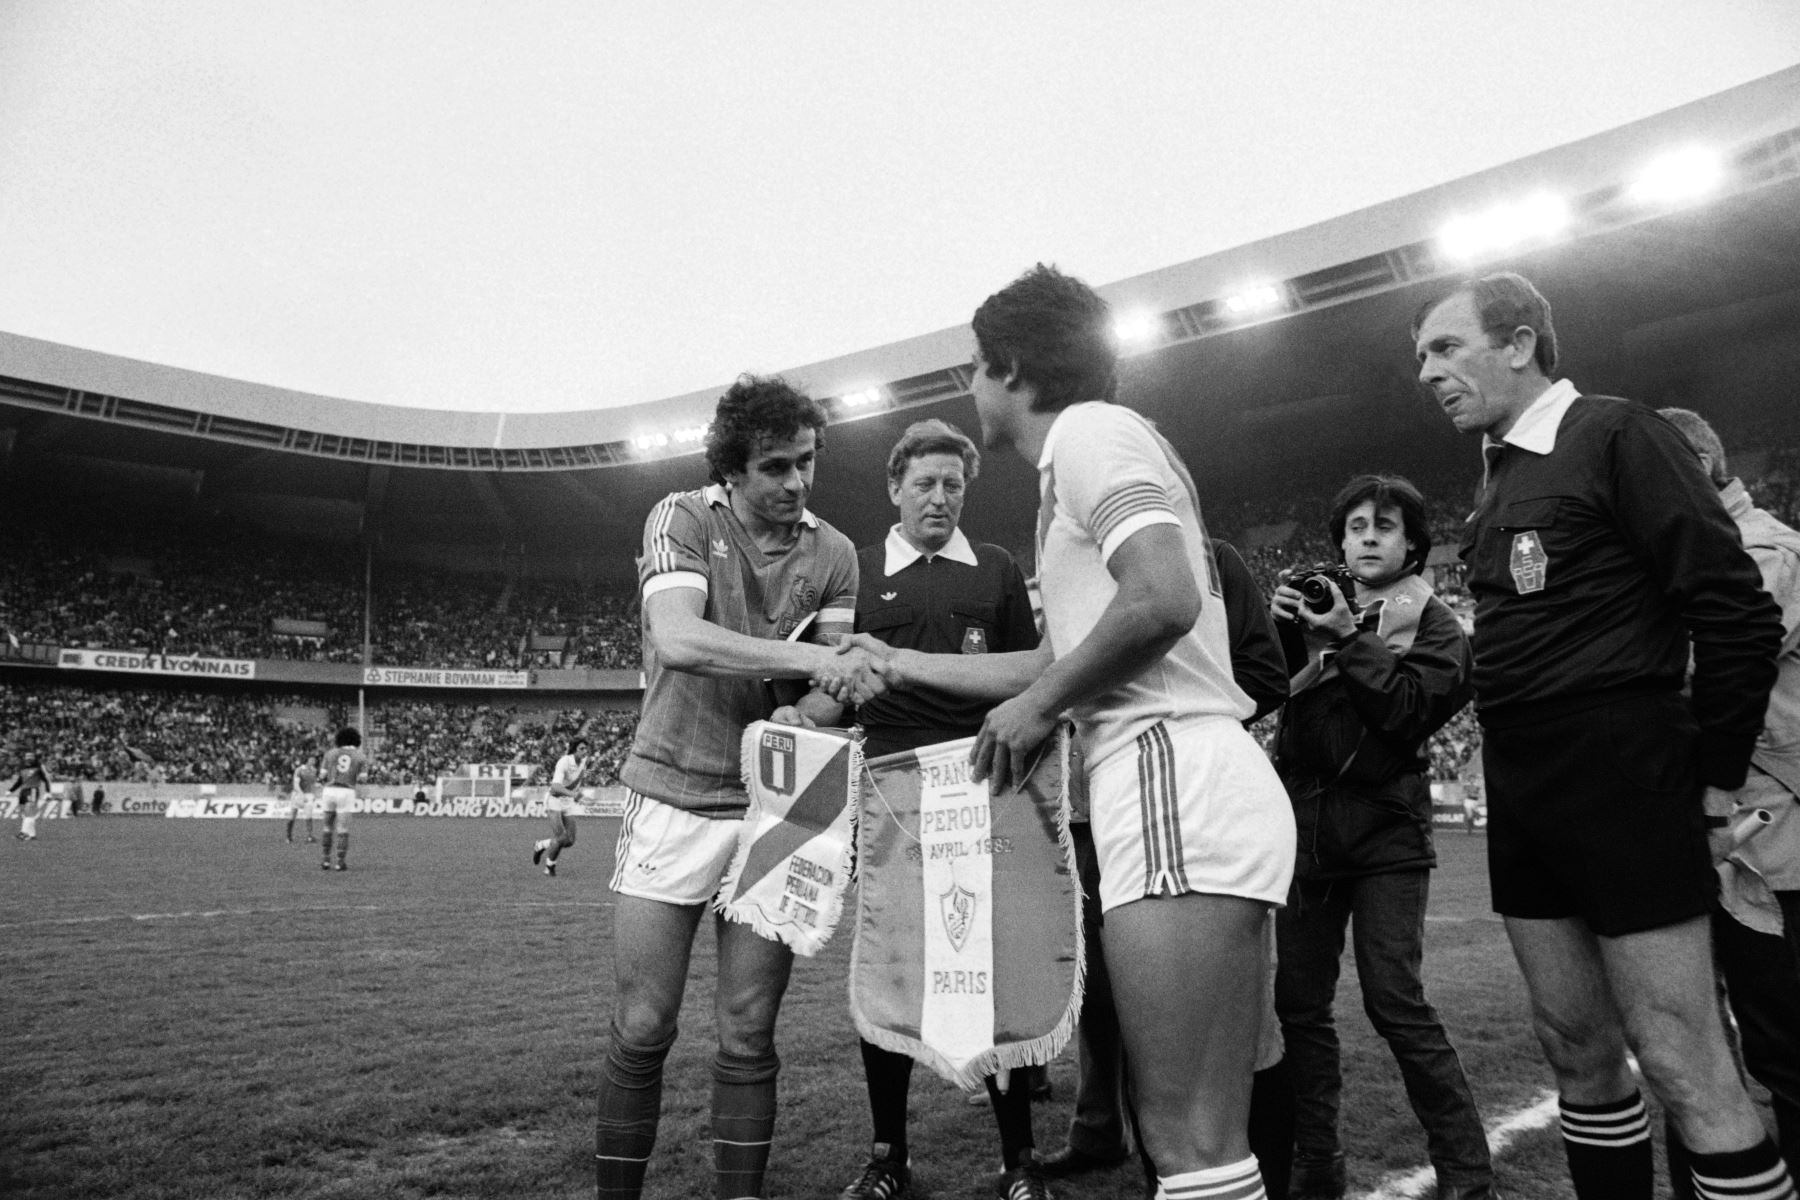 El jugador francés Michel Platini (L) le da la mano a un Al capitán de la selección peruana Ruben Toribio Diaz  durante el partido amistoso Francia-Perú en el estadio Parc des Princes en París el 28 de abril de 1982.
Georges BENDRIHEM / AFP